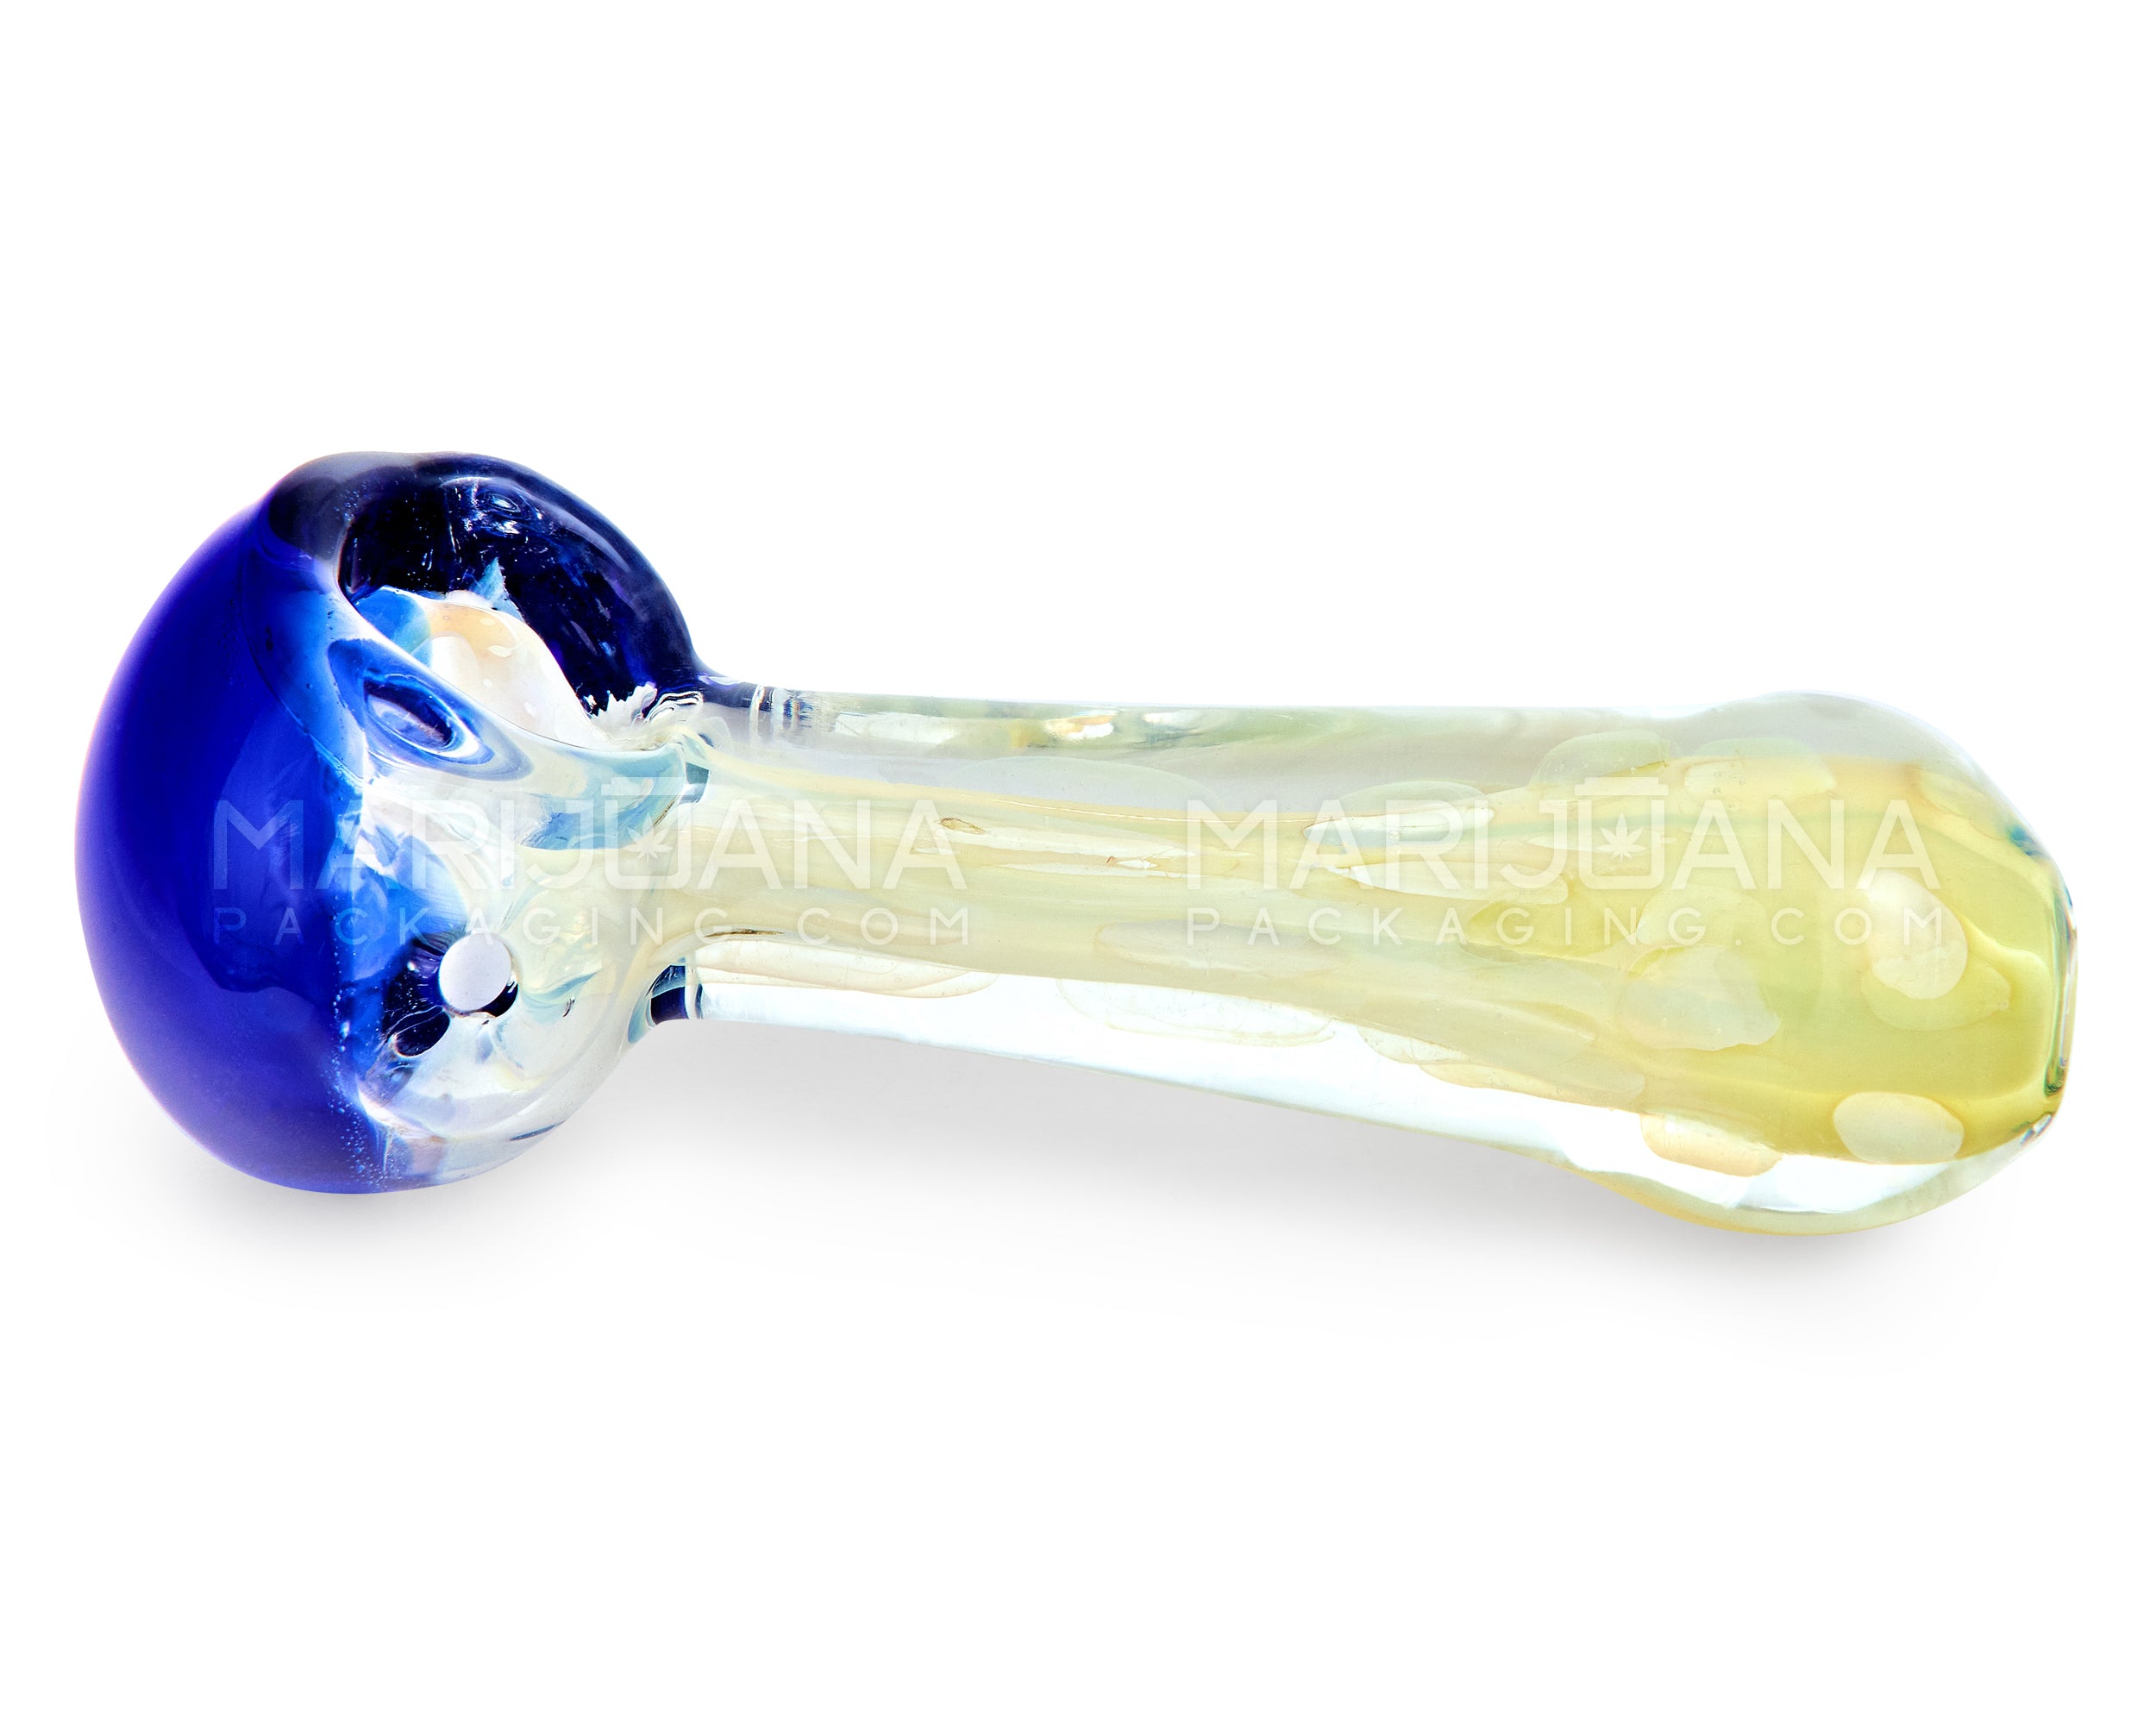 Multi Fumed Spoon Hand Pipe | 4in Long - Glass - Blue - 4